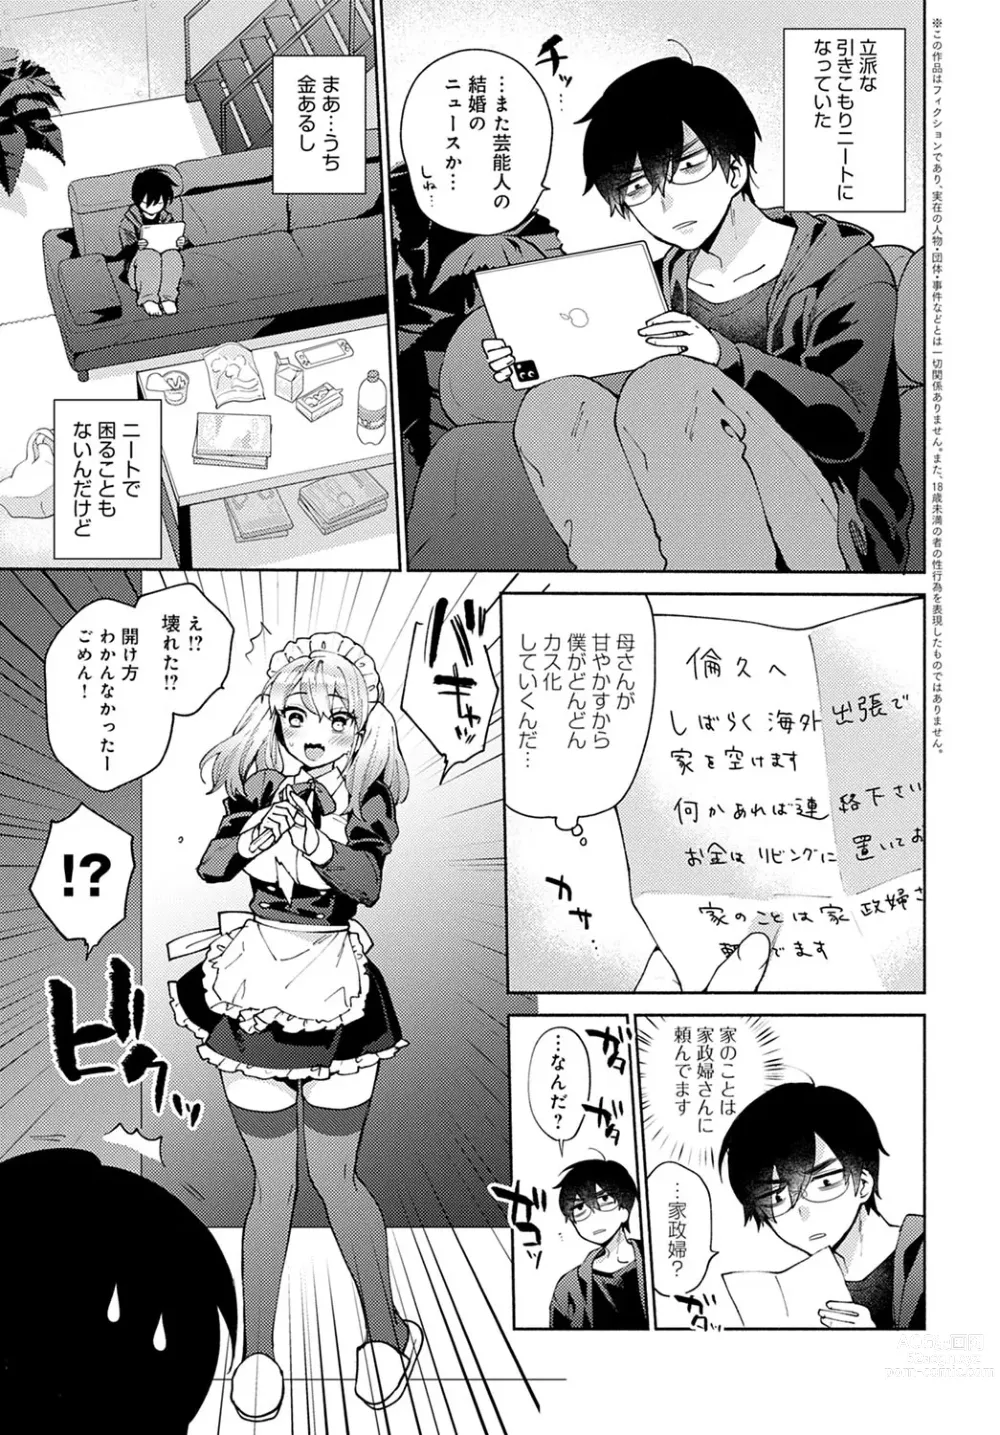 Page 3 of manga Oshikake Dolce